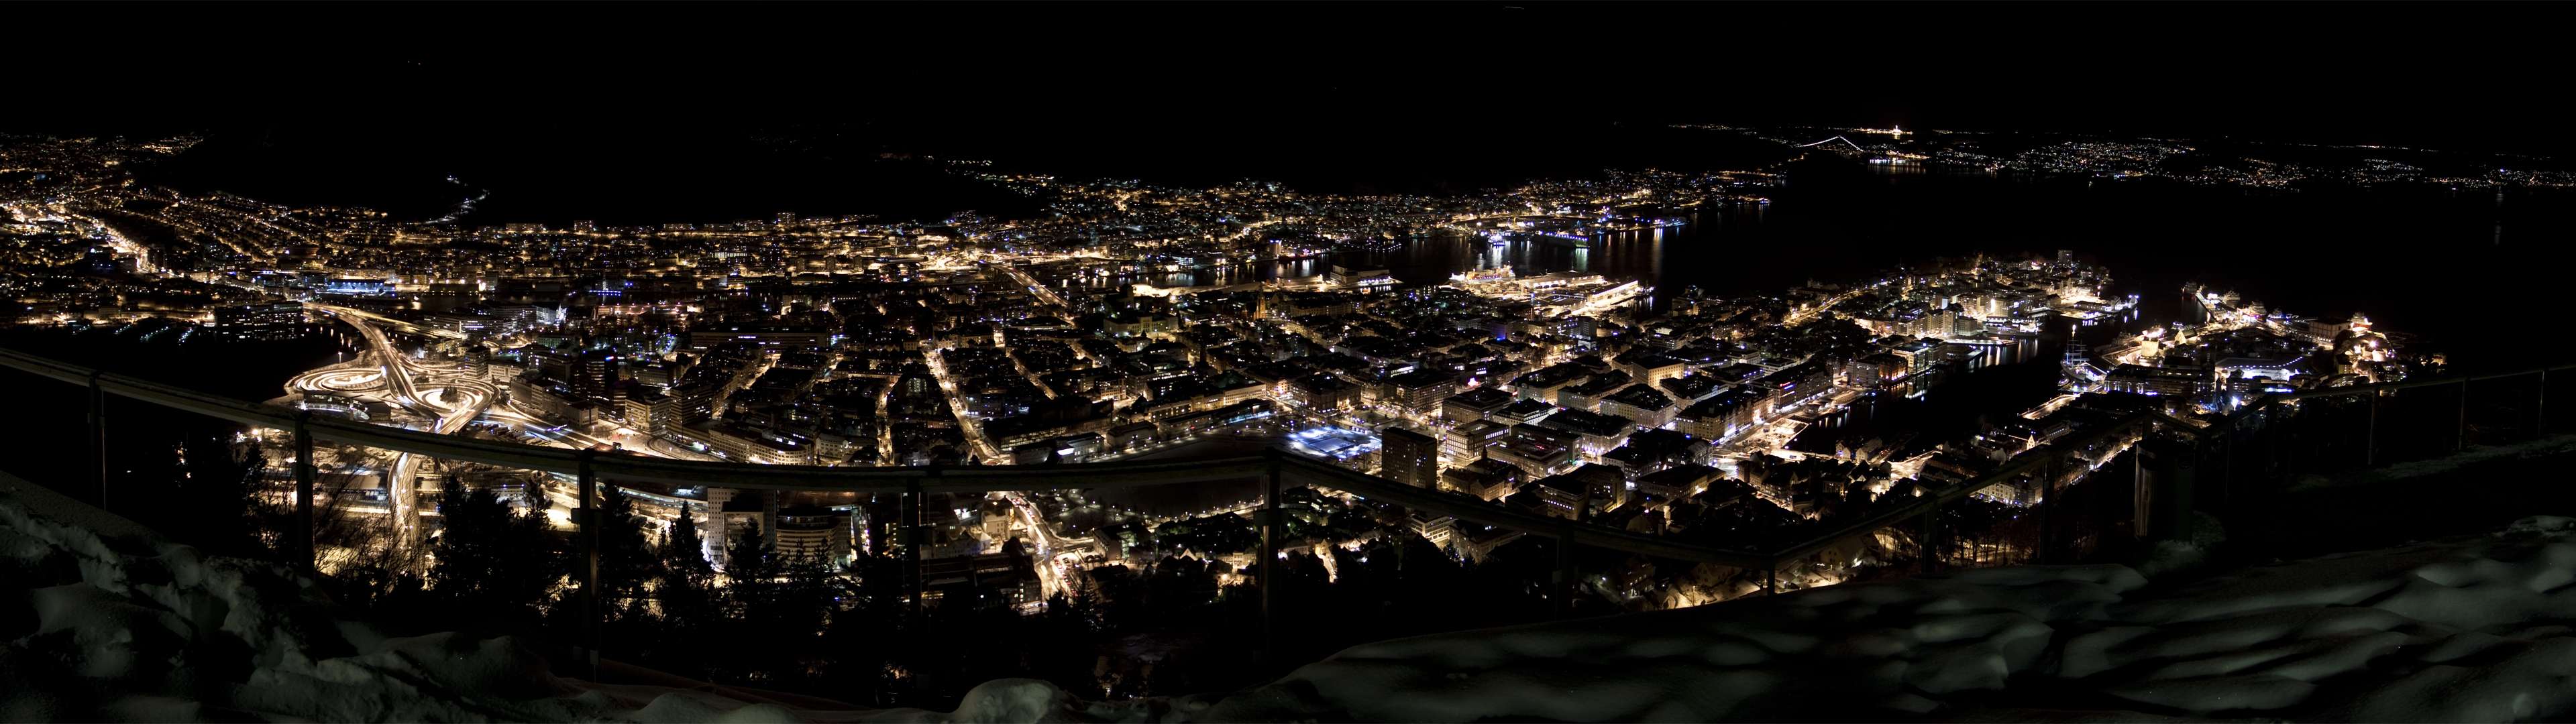 Winter In Bergen By Gsm2k